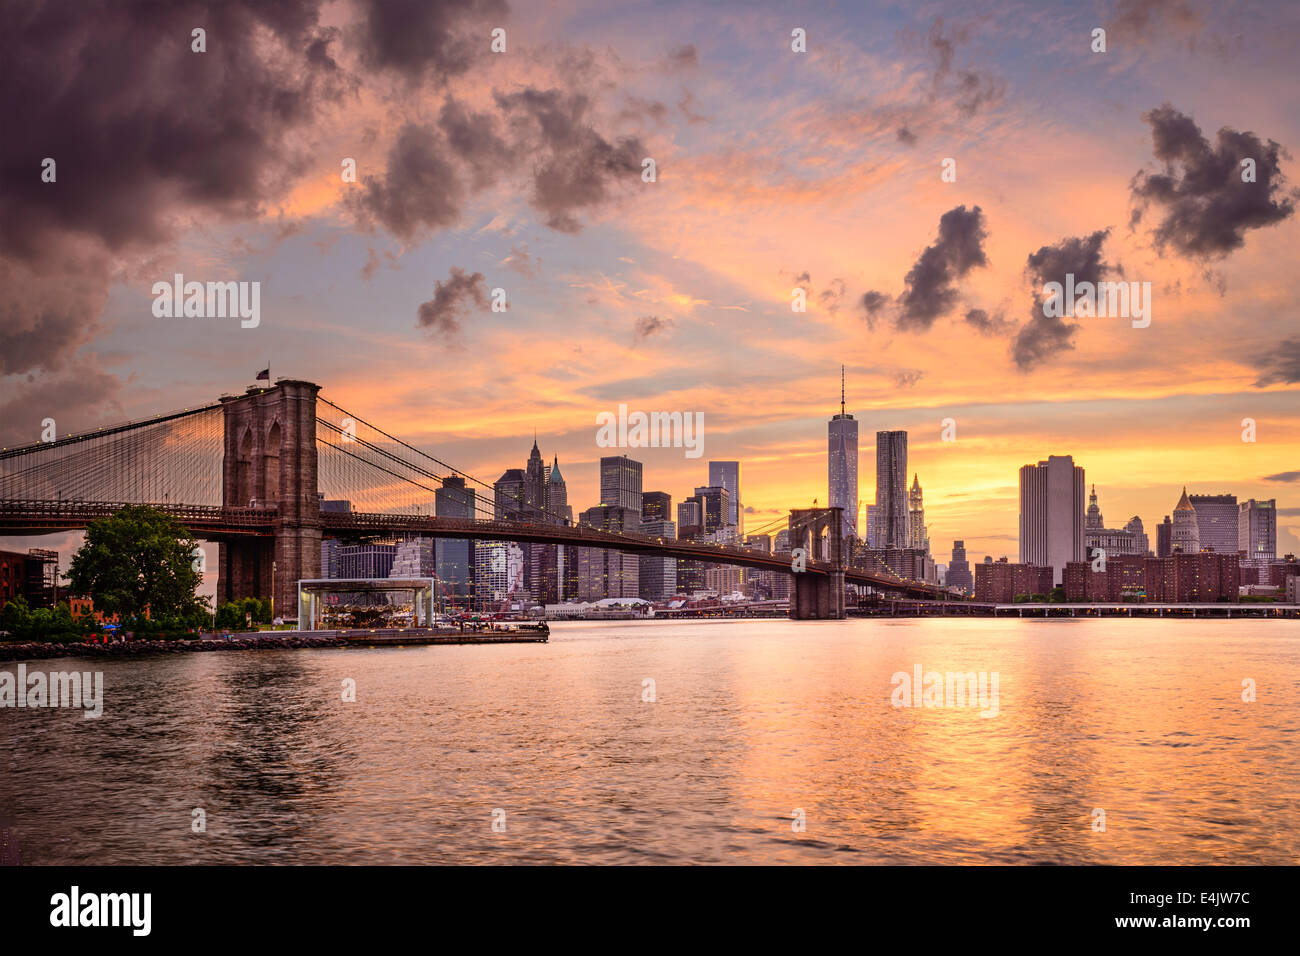 La Ciudad de Nueva York, EE.UU skyline al atardecer. Foto de stock